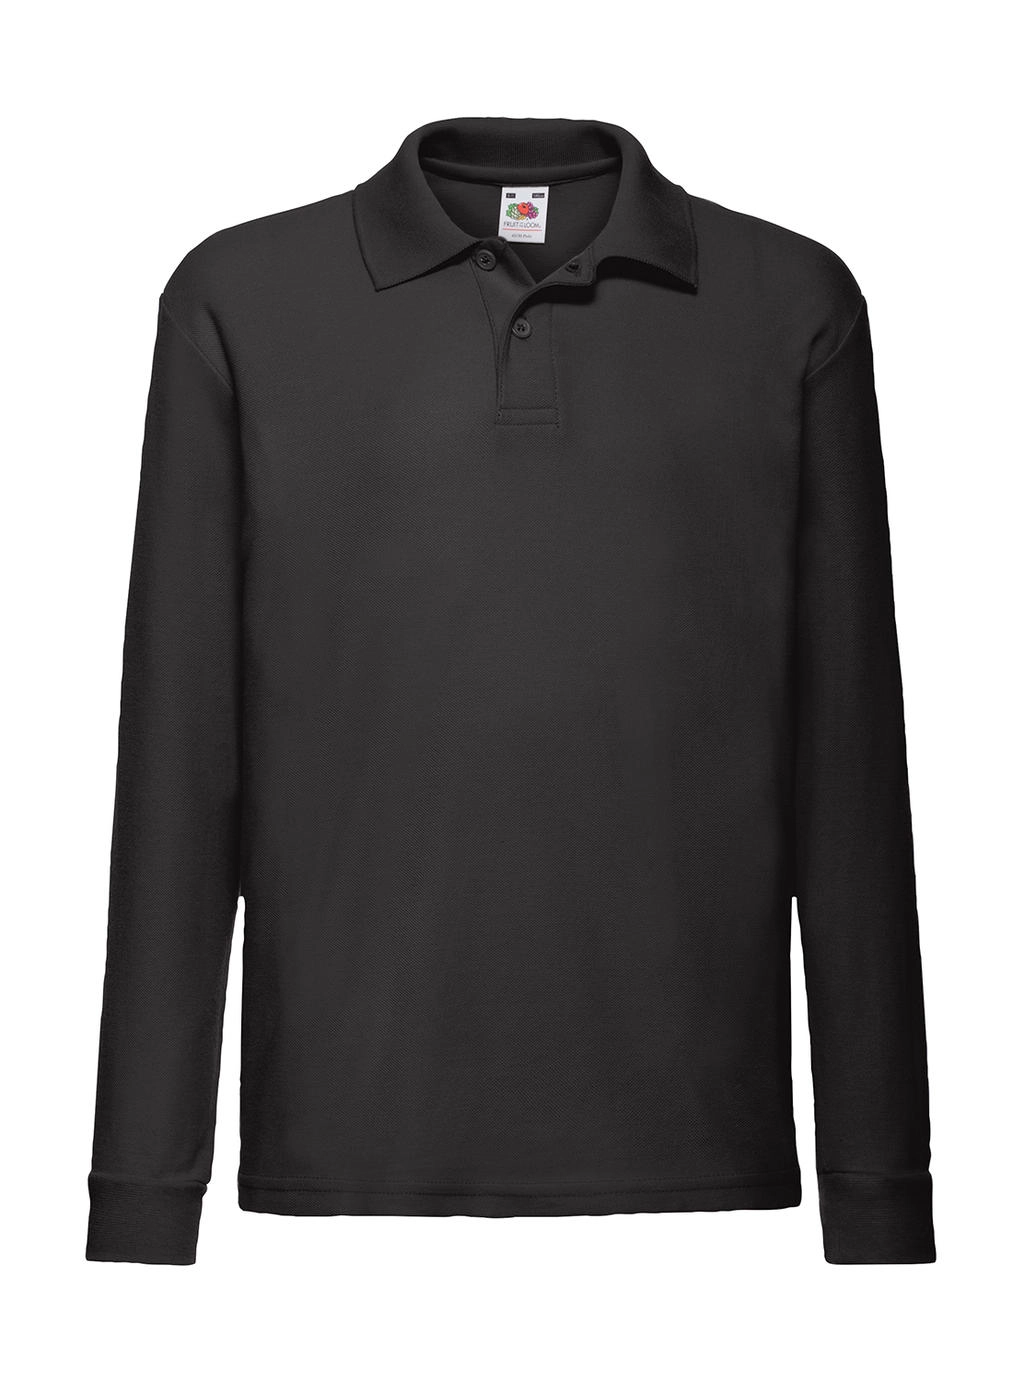 Kids` 65/35 Long Sleeve Polo zum Besticken und Bedrucken in der Farbe Black mit Ihren Logo, Schriftzug oder Motiv.